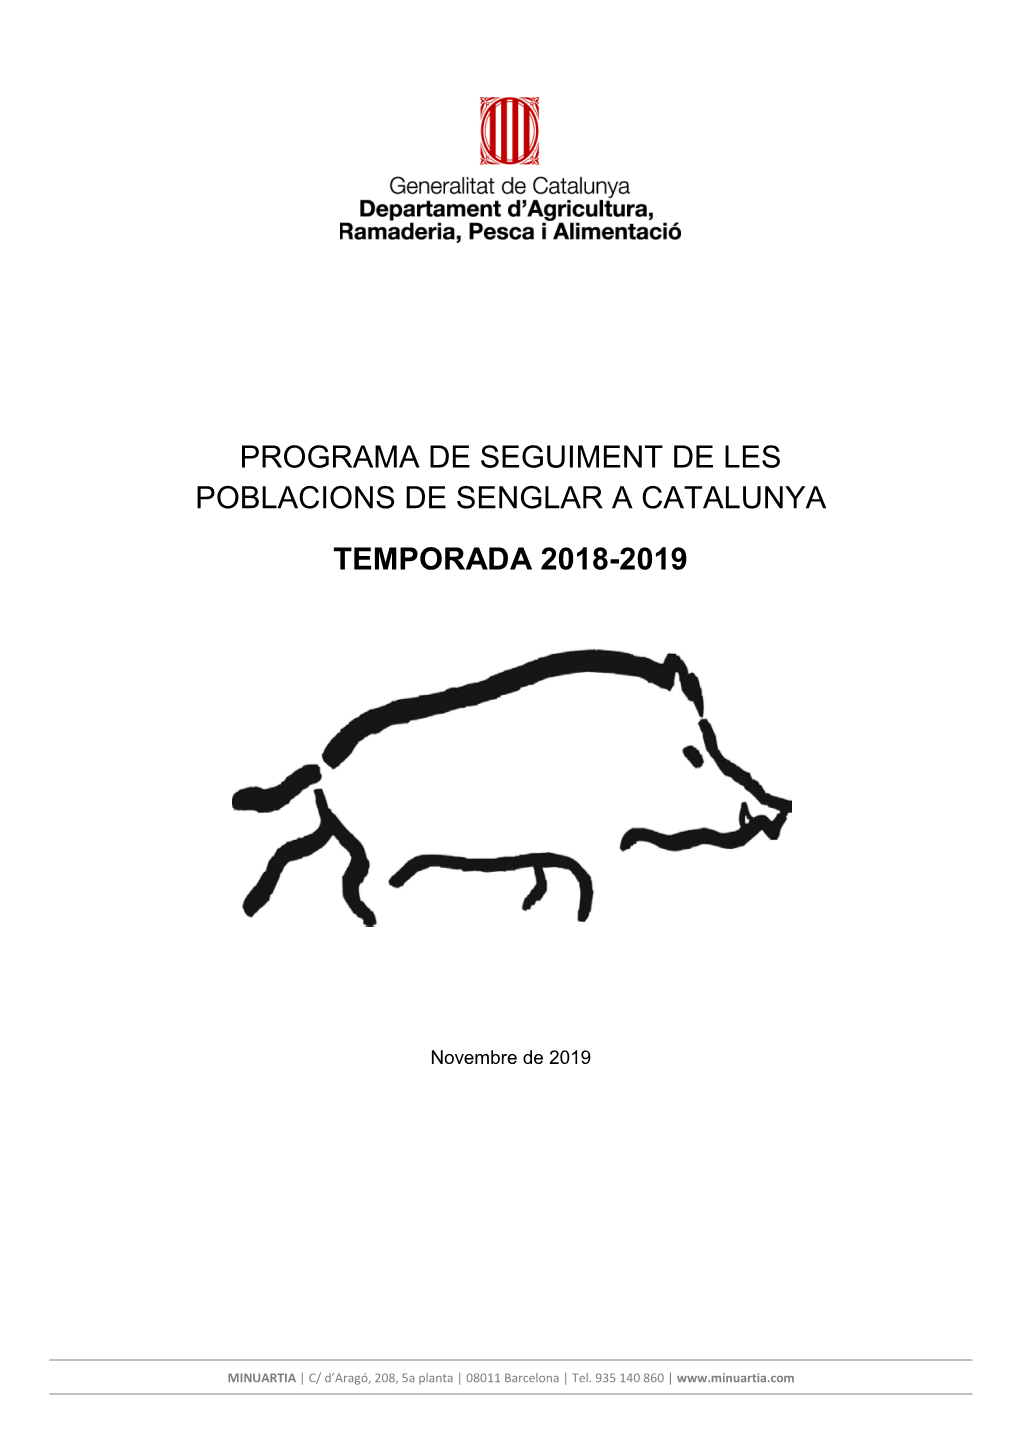 Programa De Seguiment De Les Poblacions De Senglar a Catalunya Temporada 2018-2019